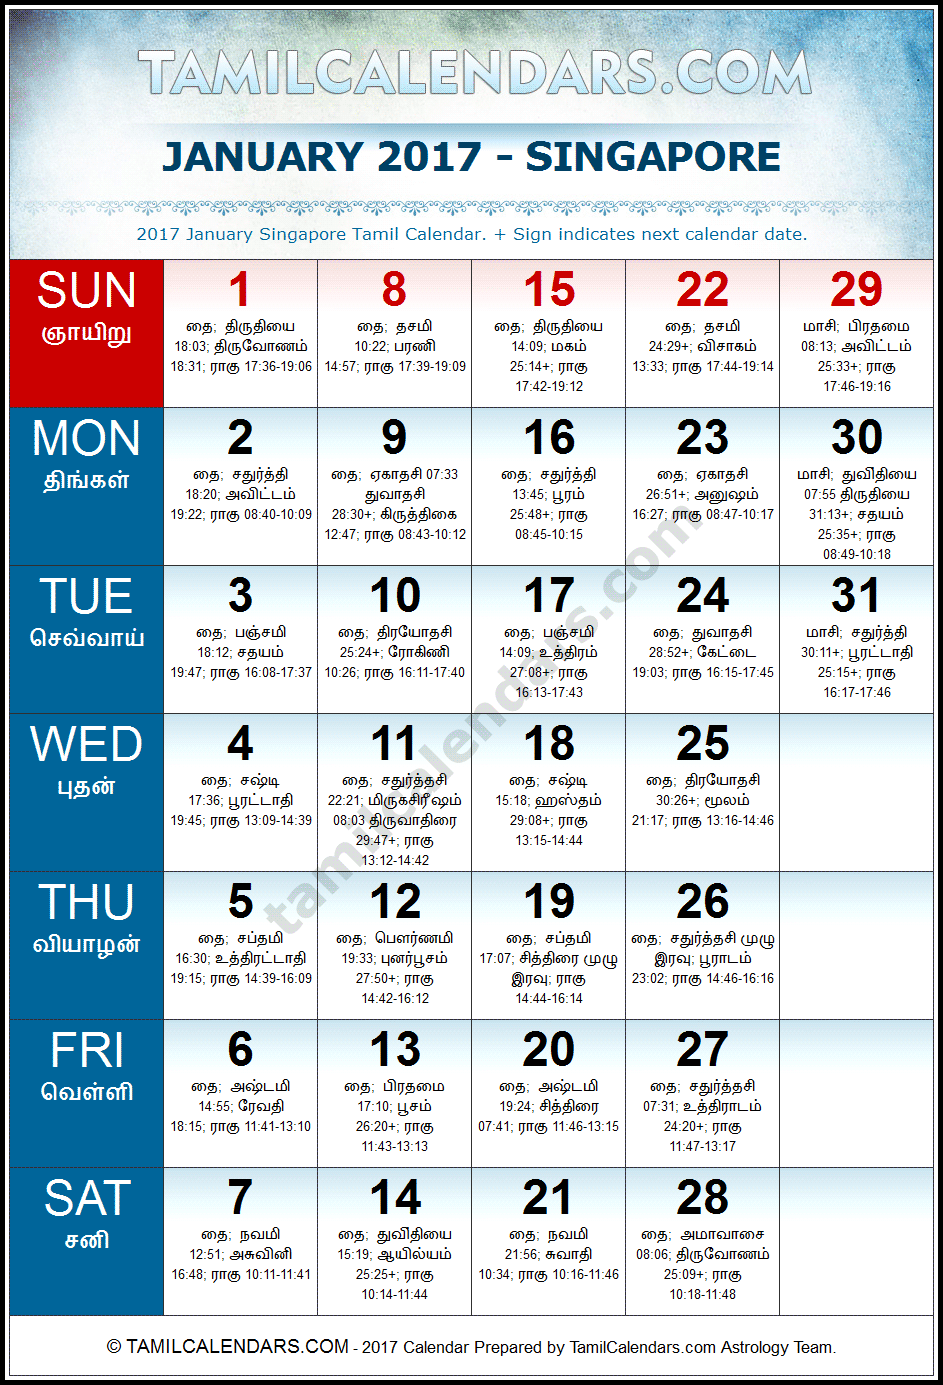 January 2017 Tamil Calendar for Singapore